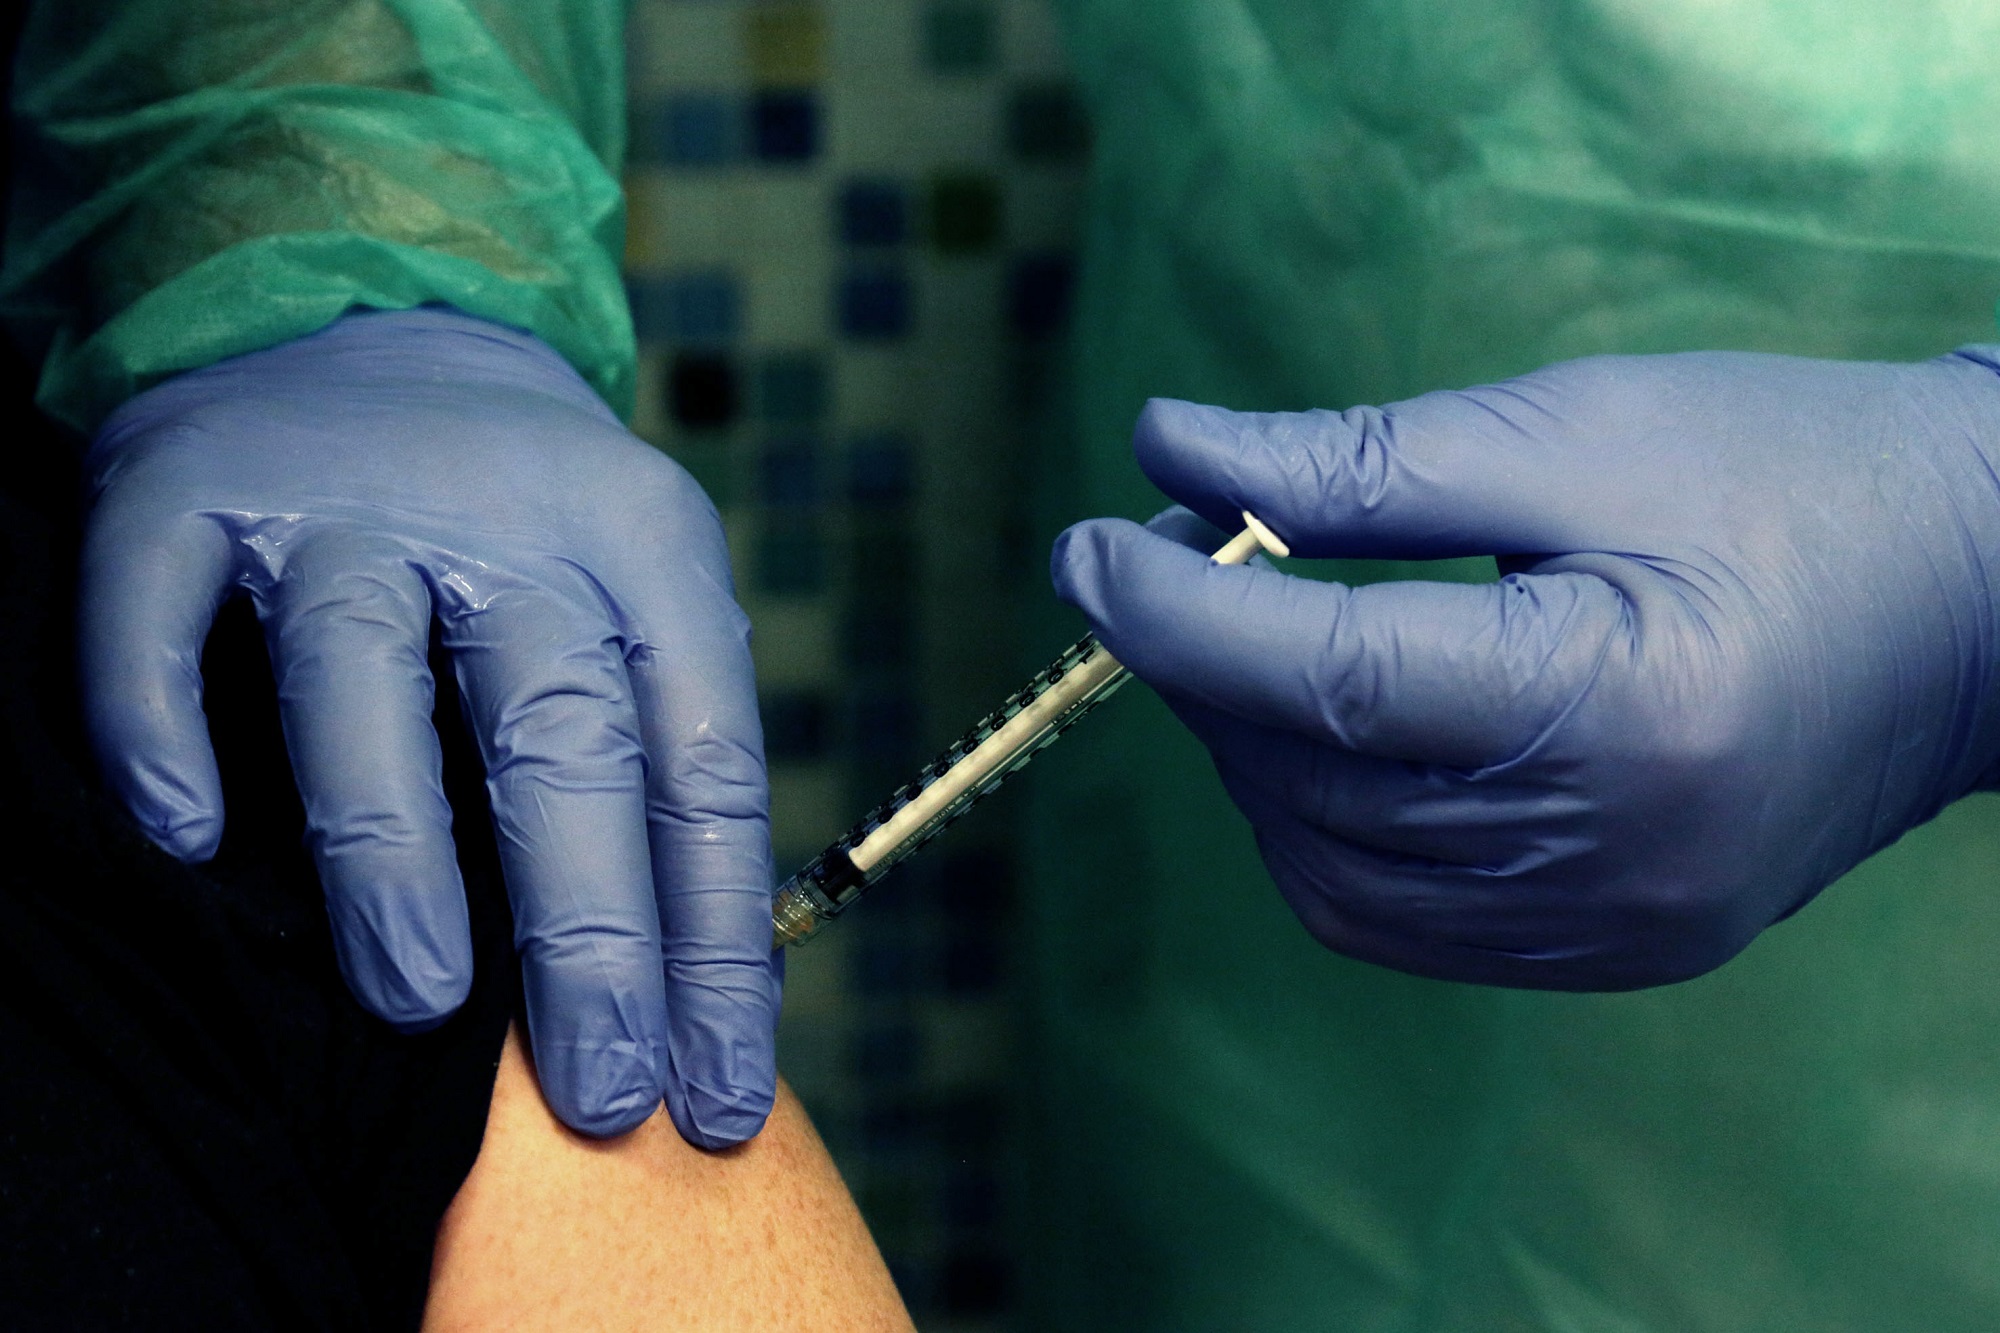 Fedriga, 'biologi, ostetriche e tecnici sanitari somministreranno vaccini'